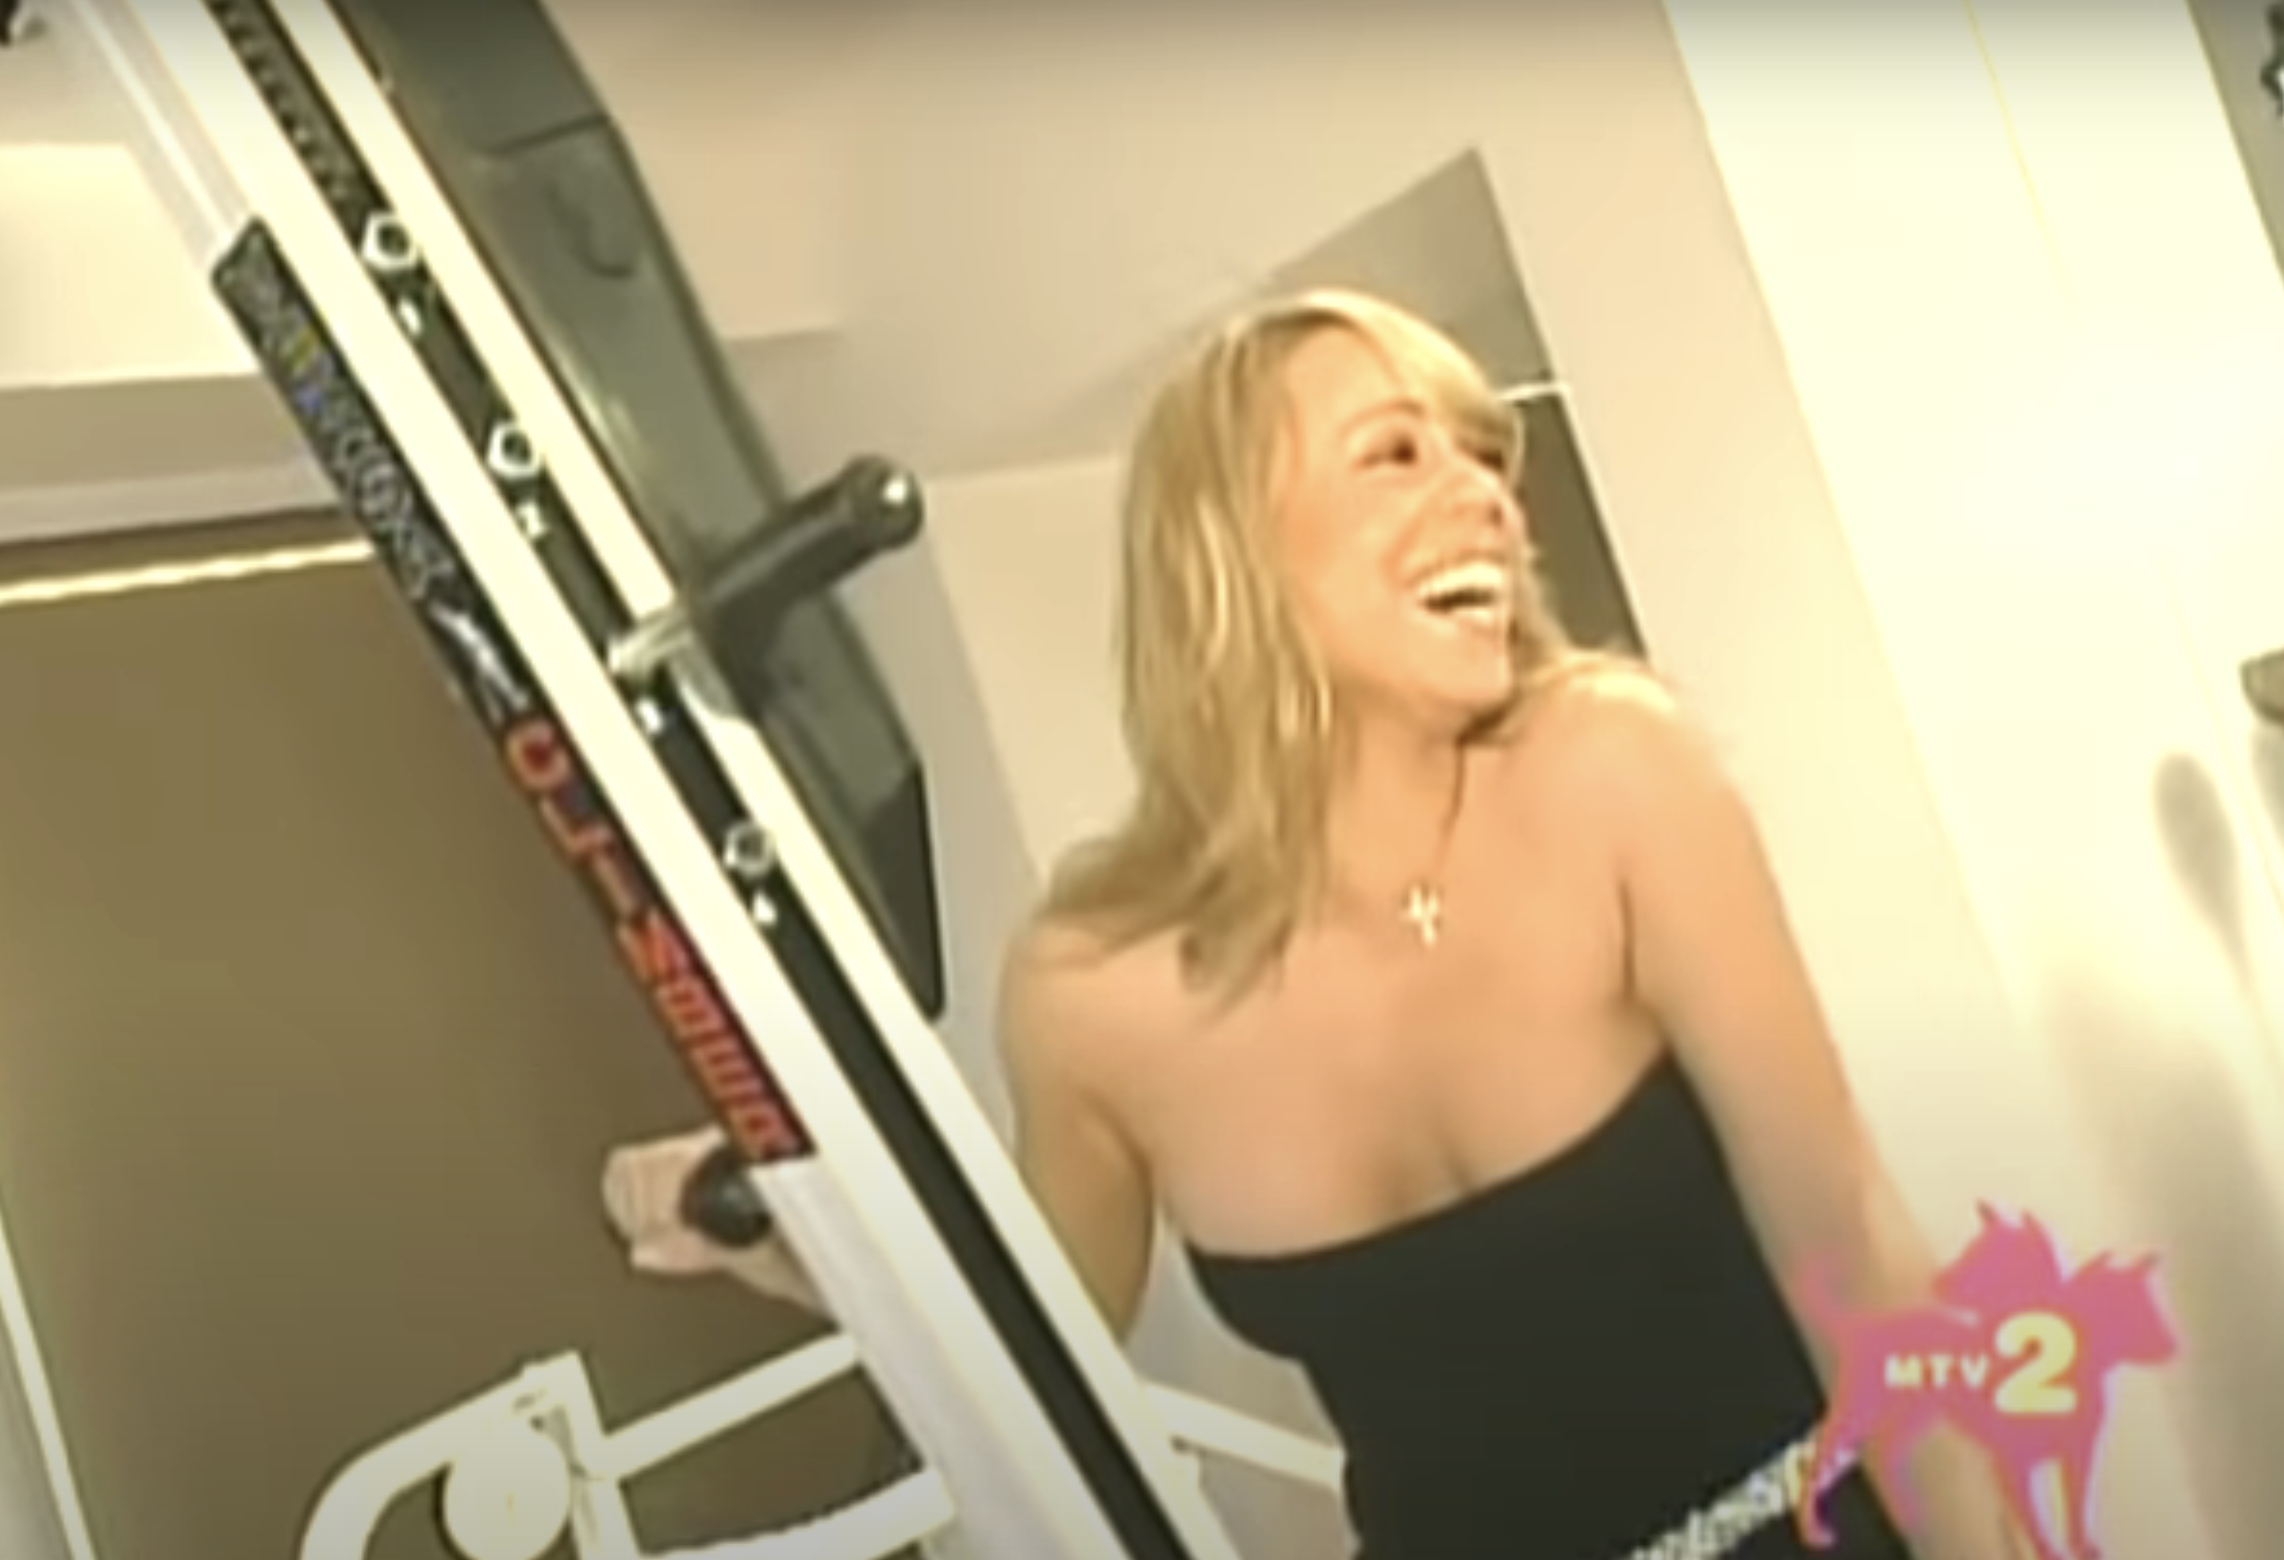 Mariah laughing on her stairmaster